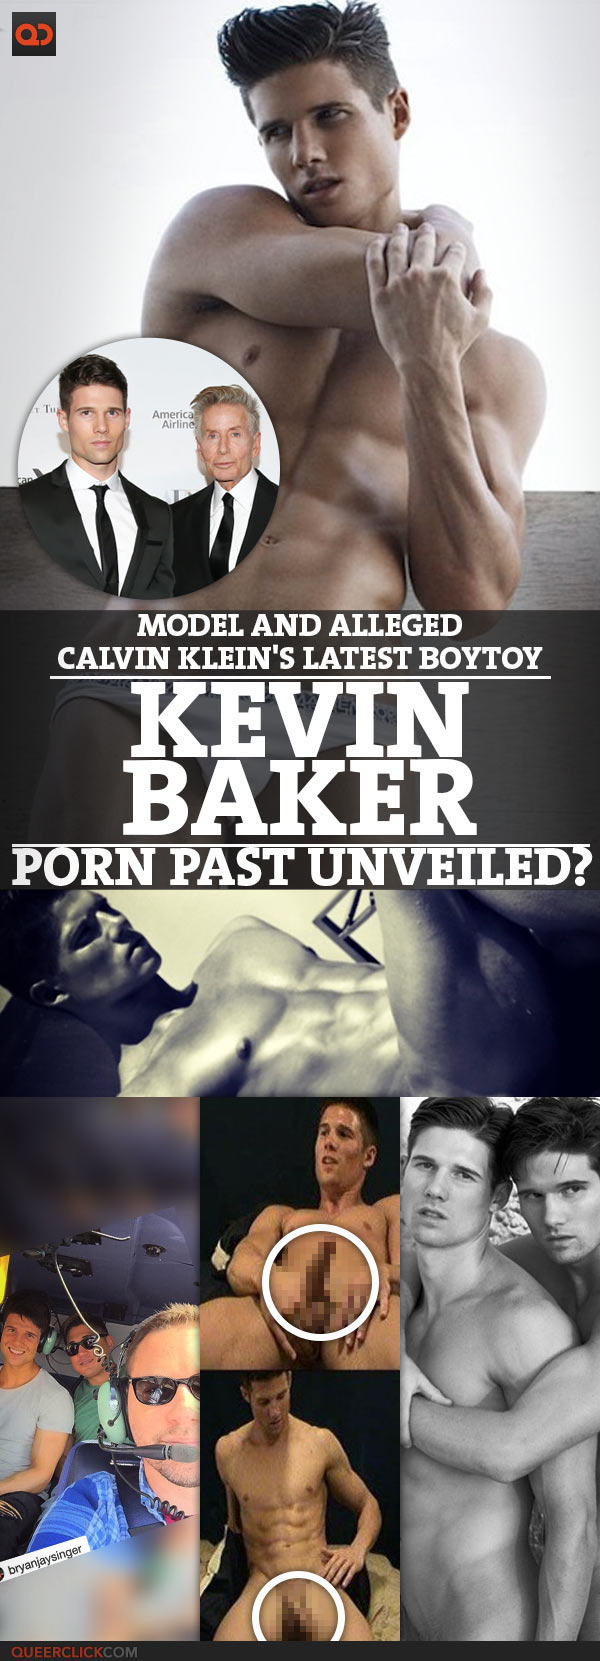 Kevin baker porn